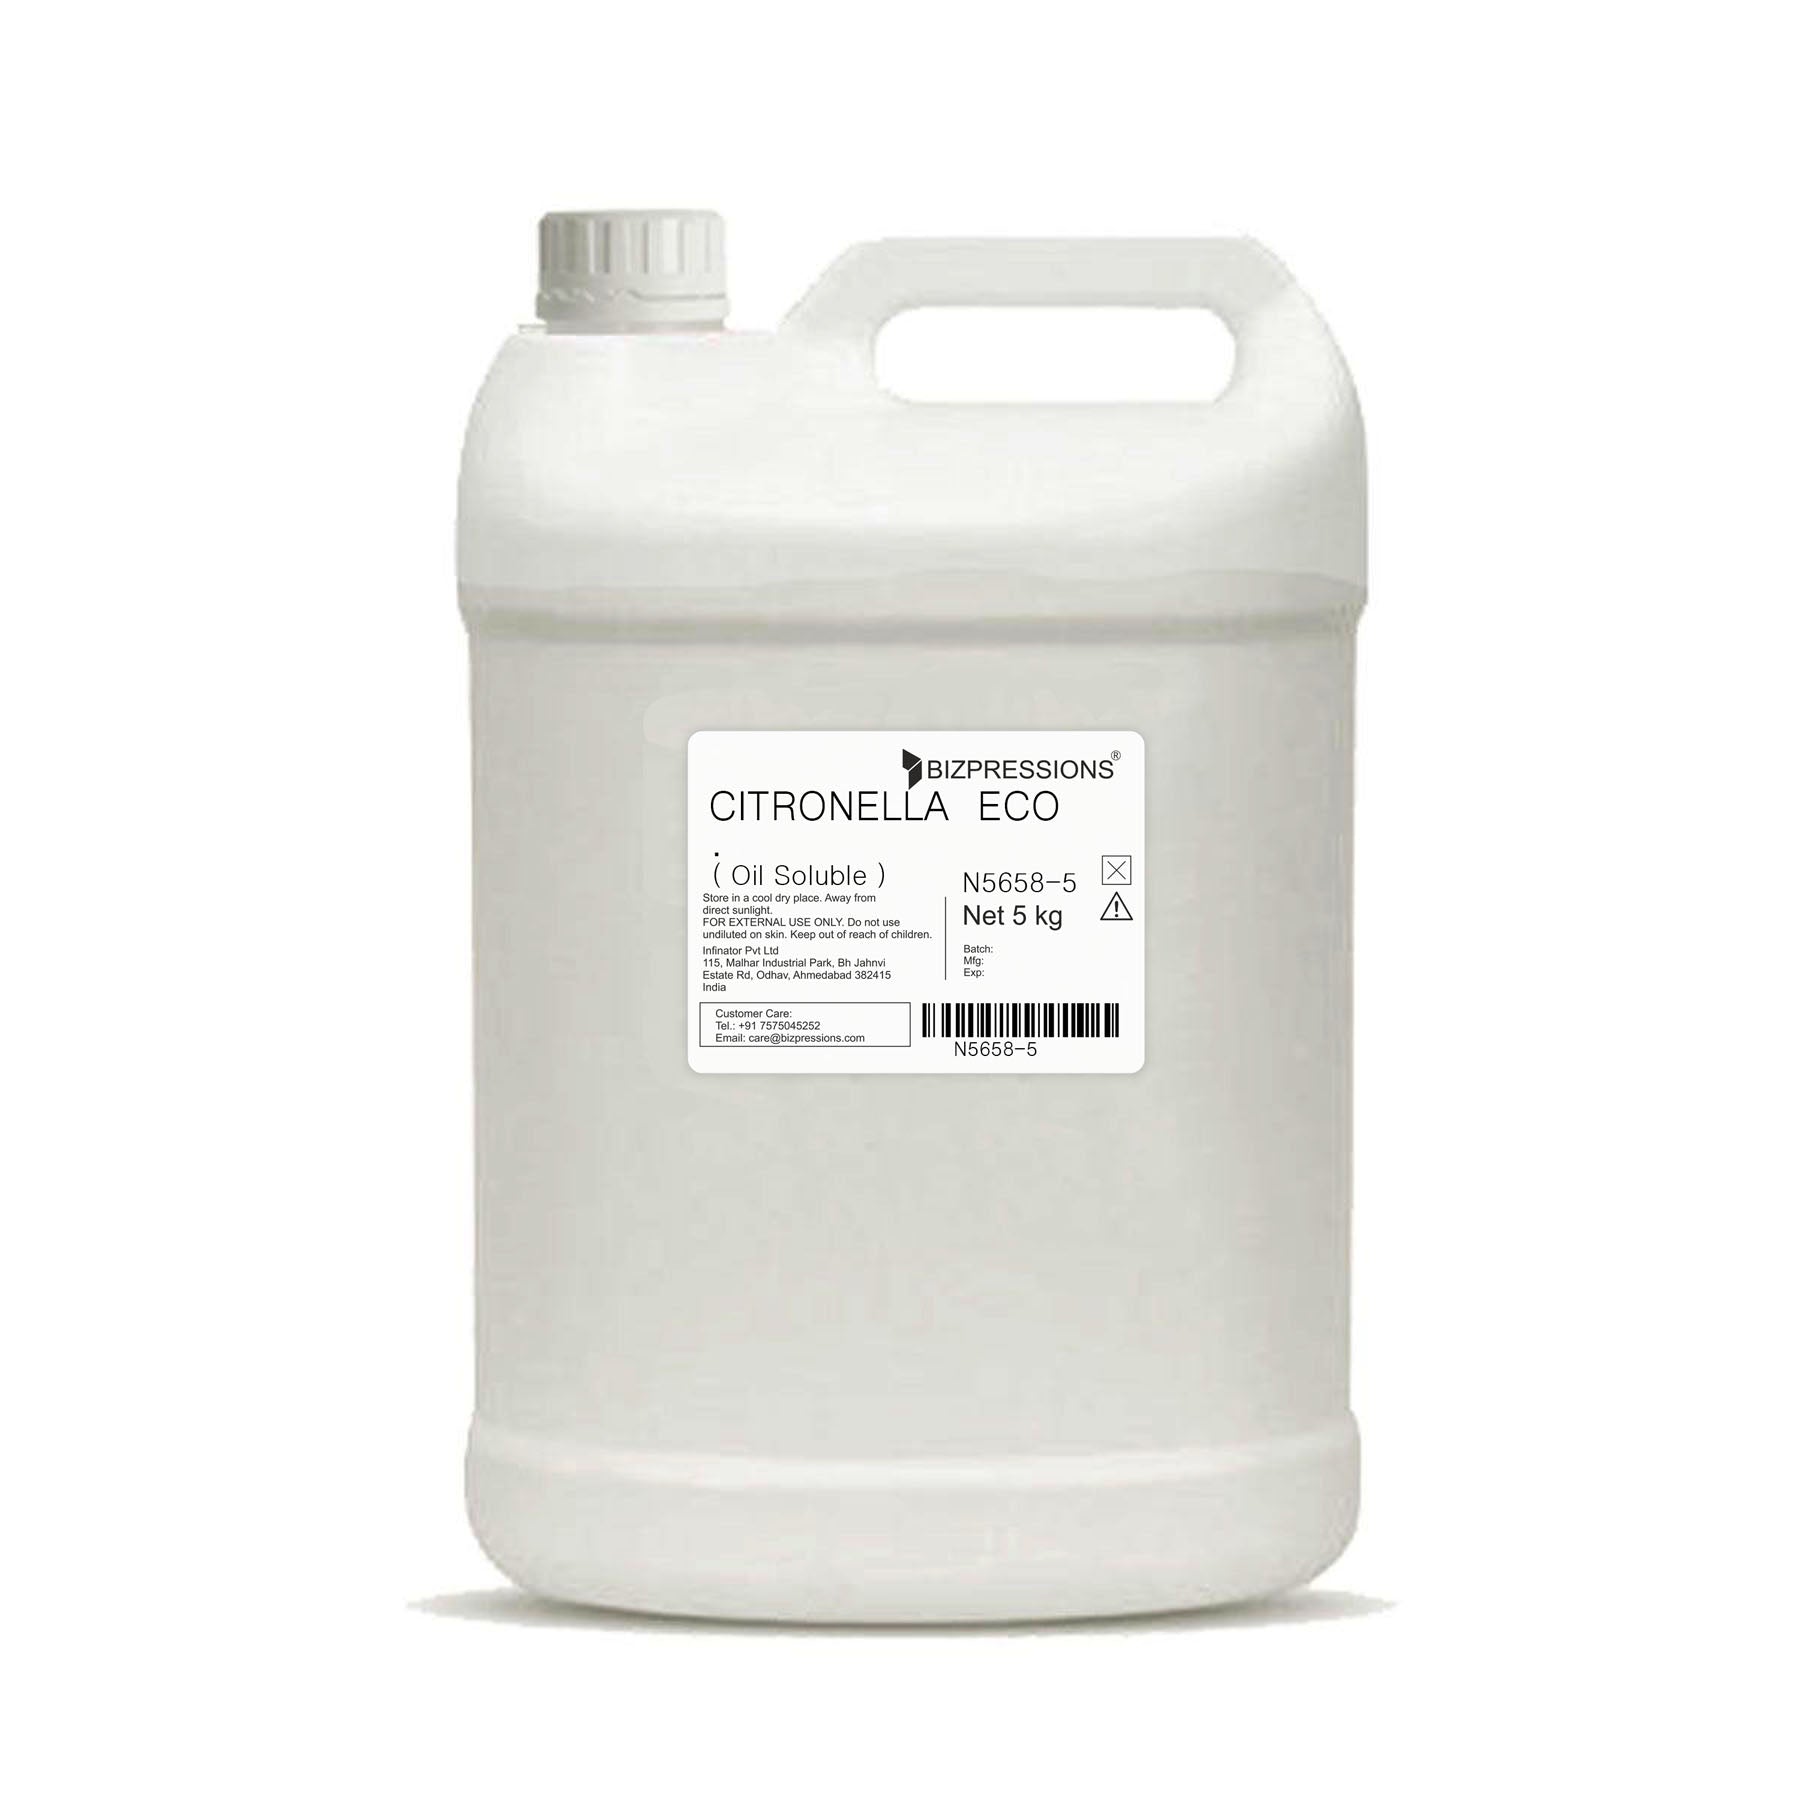 CITRONELLA ECO - Fragrance ( Oil Soluble ) - 5 kg